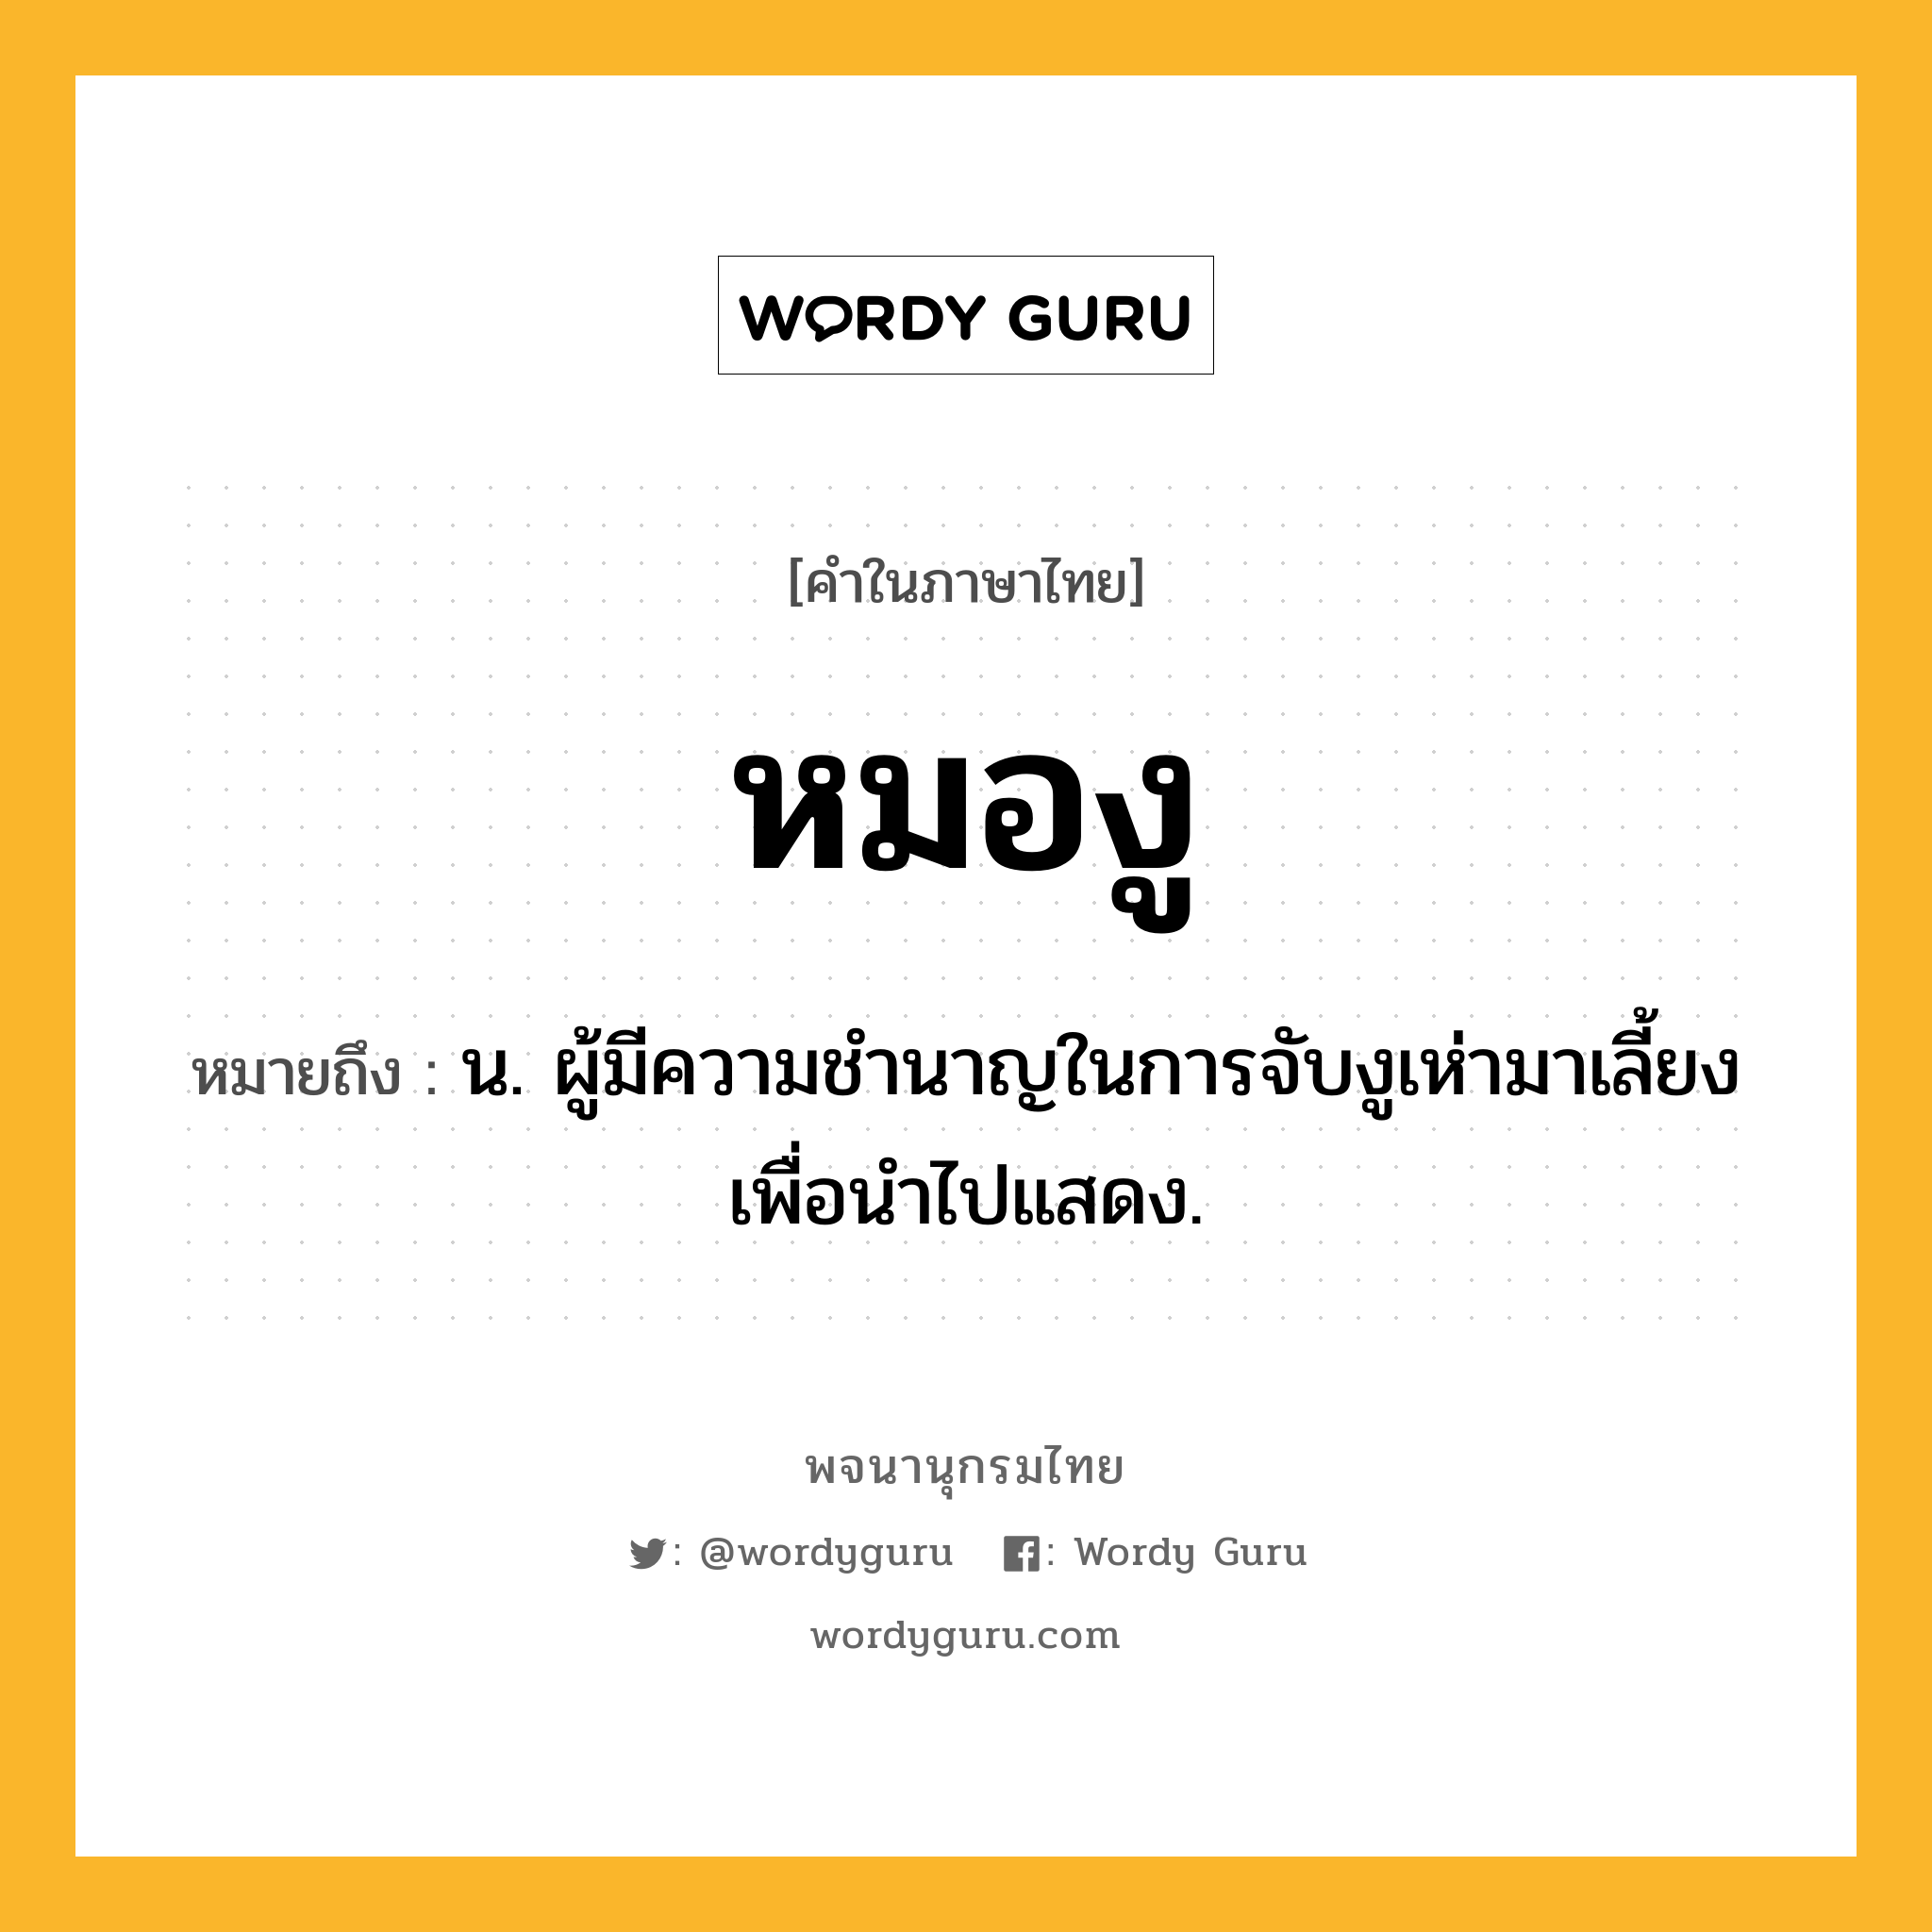 หมองู ความหมาย หมายถึงอะไร?, คำในภาษาไทย หมองู หมายถึง น. ผู้มีความชำนาญในการจับงูเห่ามาเลี้ยงเพื่อนำไปแสดง.